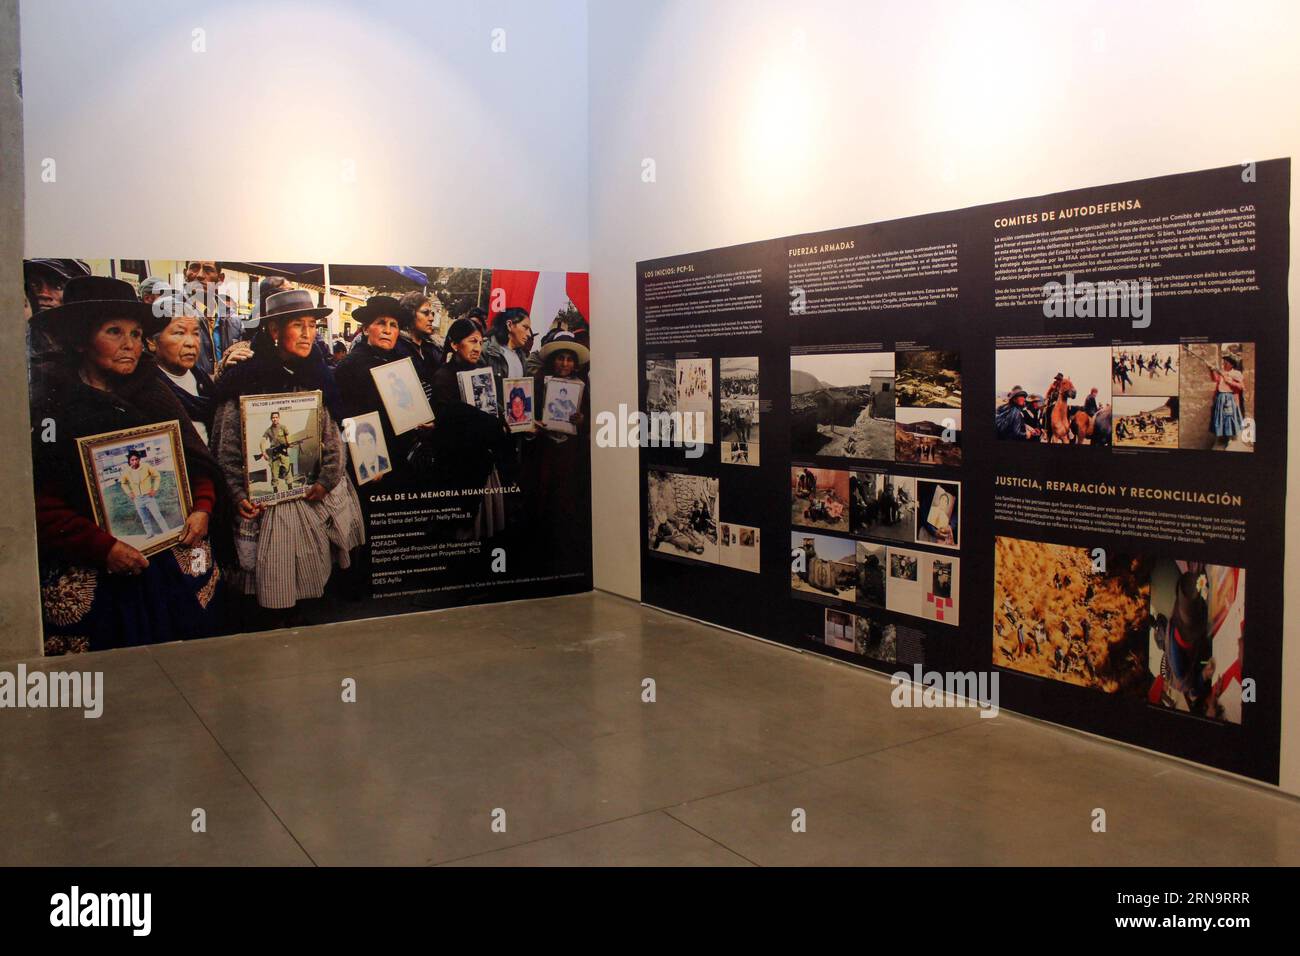 LIMA, 17. Dezember 2015 -- Bilder sind im Museum für Erinnerung, Toleranz und soziale Eingliederung in Lima, Peru, 17. Dezember 2015 zu sehen. Das Museum zeigt Exponate, die den internen bewaffneten Konflikt im Andenland zwischen 1980 und 2000 reflektieren. PERU-LIMA-HISTORY-CONFLICT-MUSEUM LuisxCamacho PUBLICATIONxNOTxINxCHN Lima DEC 17 2015 Bilder sind IM Museum für Gedenken Toleranz und soziale Eingliederung in Lima ausgestellt Peru DEC 17 2015 das Museum zeigt Exponate Thatcher reflektiert den inneren bewaffneten KONFLIKT im Andenland zwischen 1980 und 2000 Peru Lima History CON Stockfoto